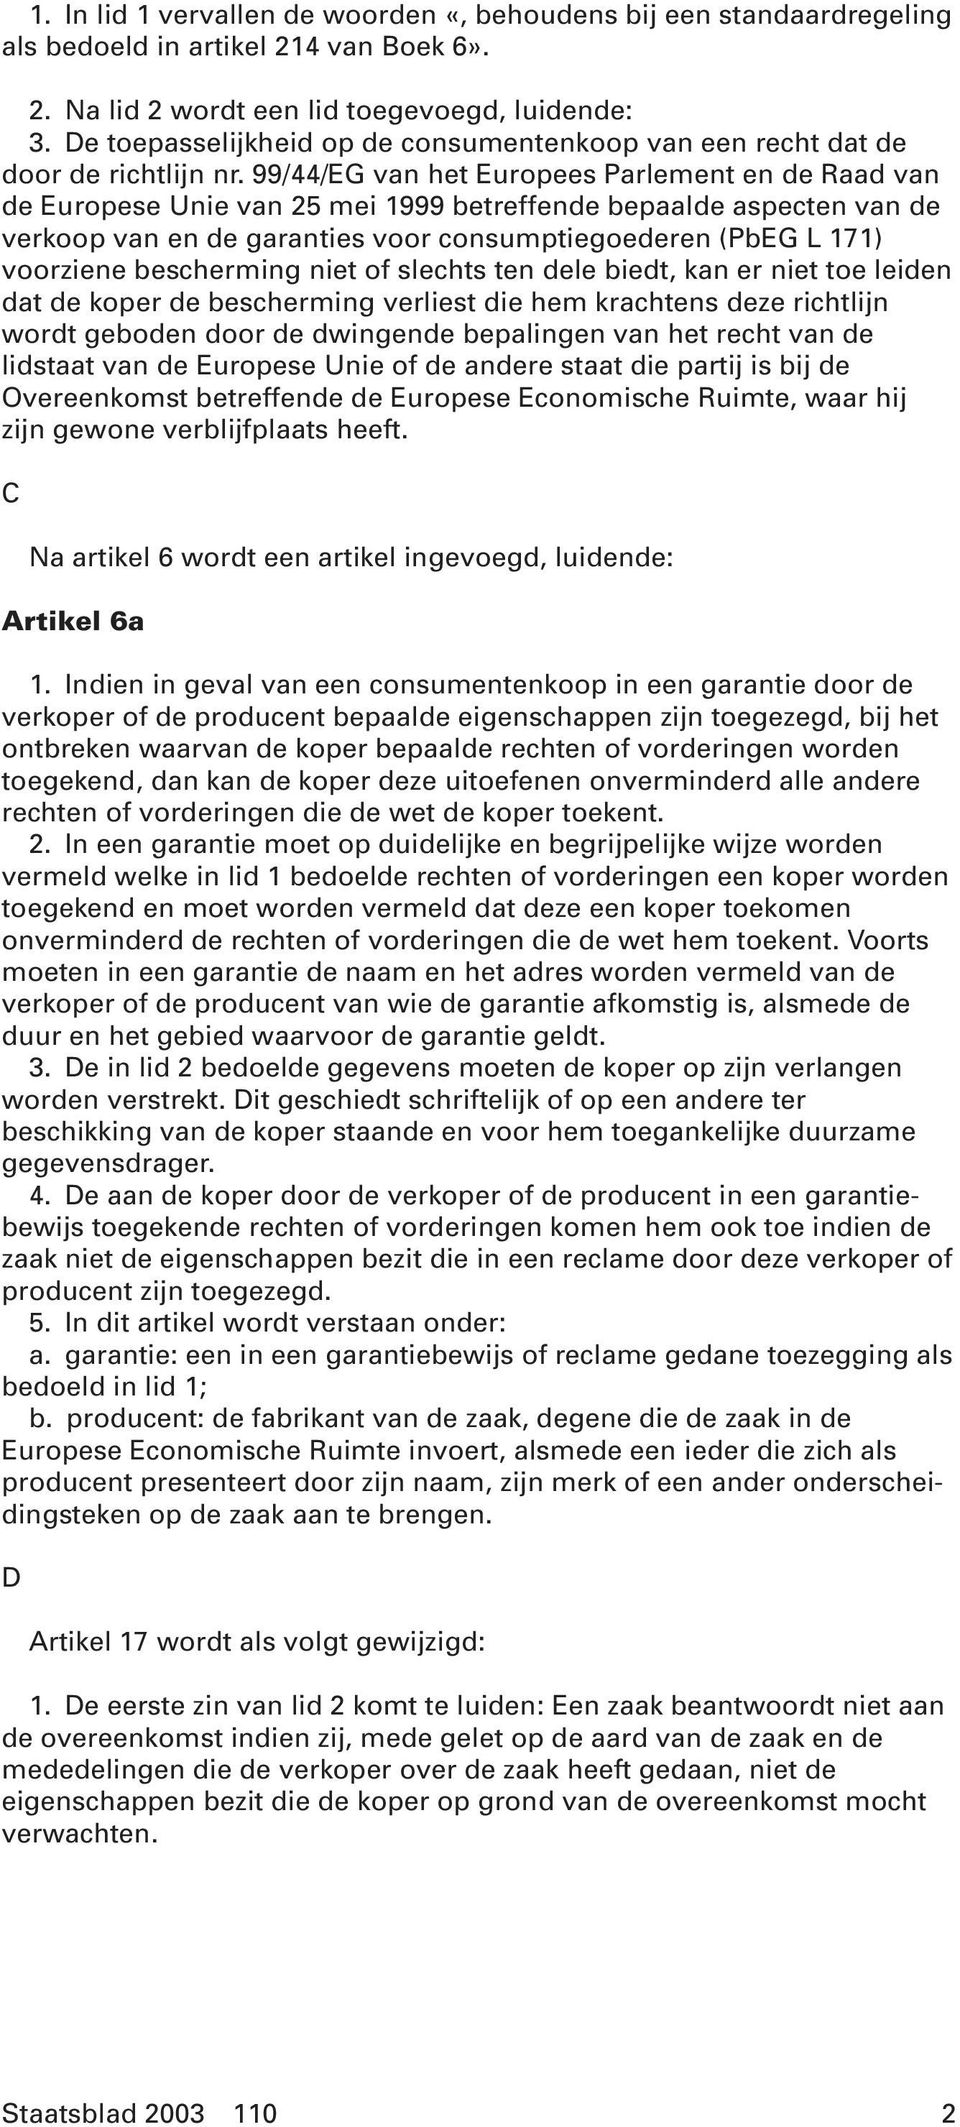 99/44/EG van het Europees Parlement en de Raad van de Europese Unie van 25 mei 1999 betreffende bepaalde aspecten van de verkoop van en de garanties voor consumptiegoederen (PbEG L 171) voorziene